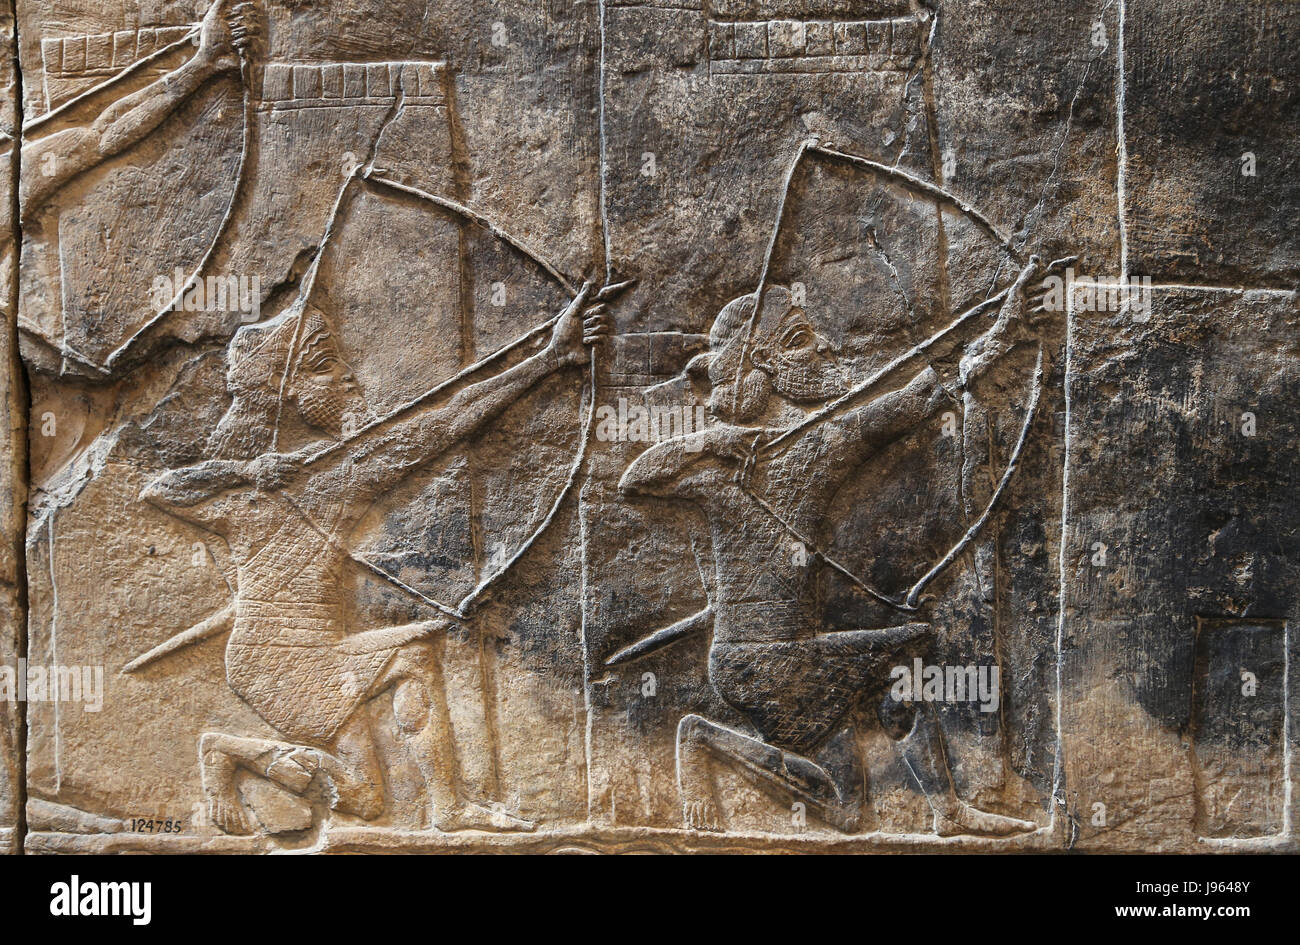 Angriff auf die Stadt - Alammu. Assyrische, 700-692 v. Chr.. Süd-West. Zimmer XIV. Bogenschützen. Ninive. Irak. Irak. British Museum. London. Stockfoto